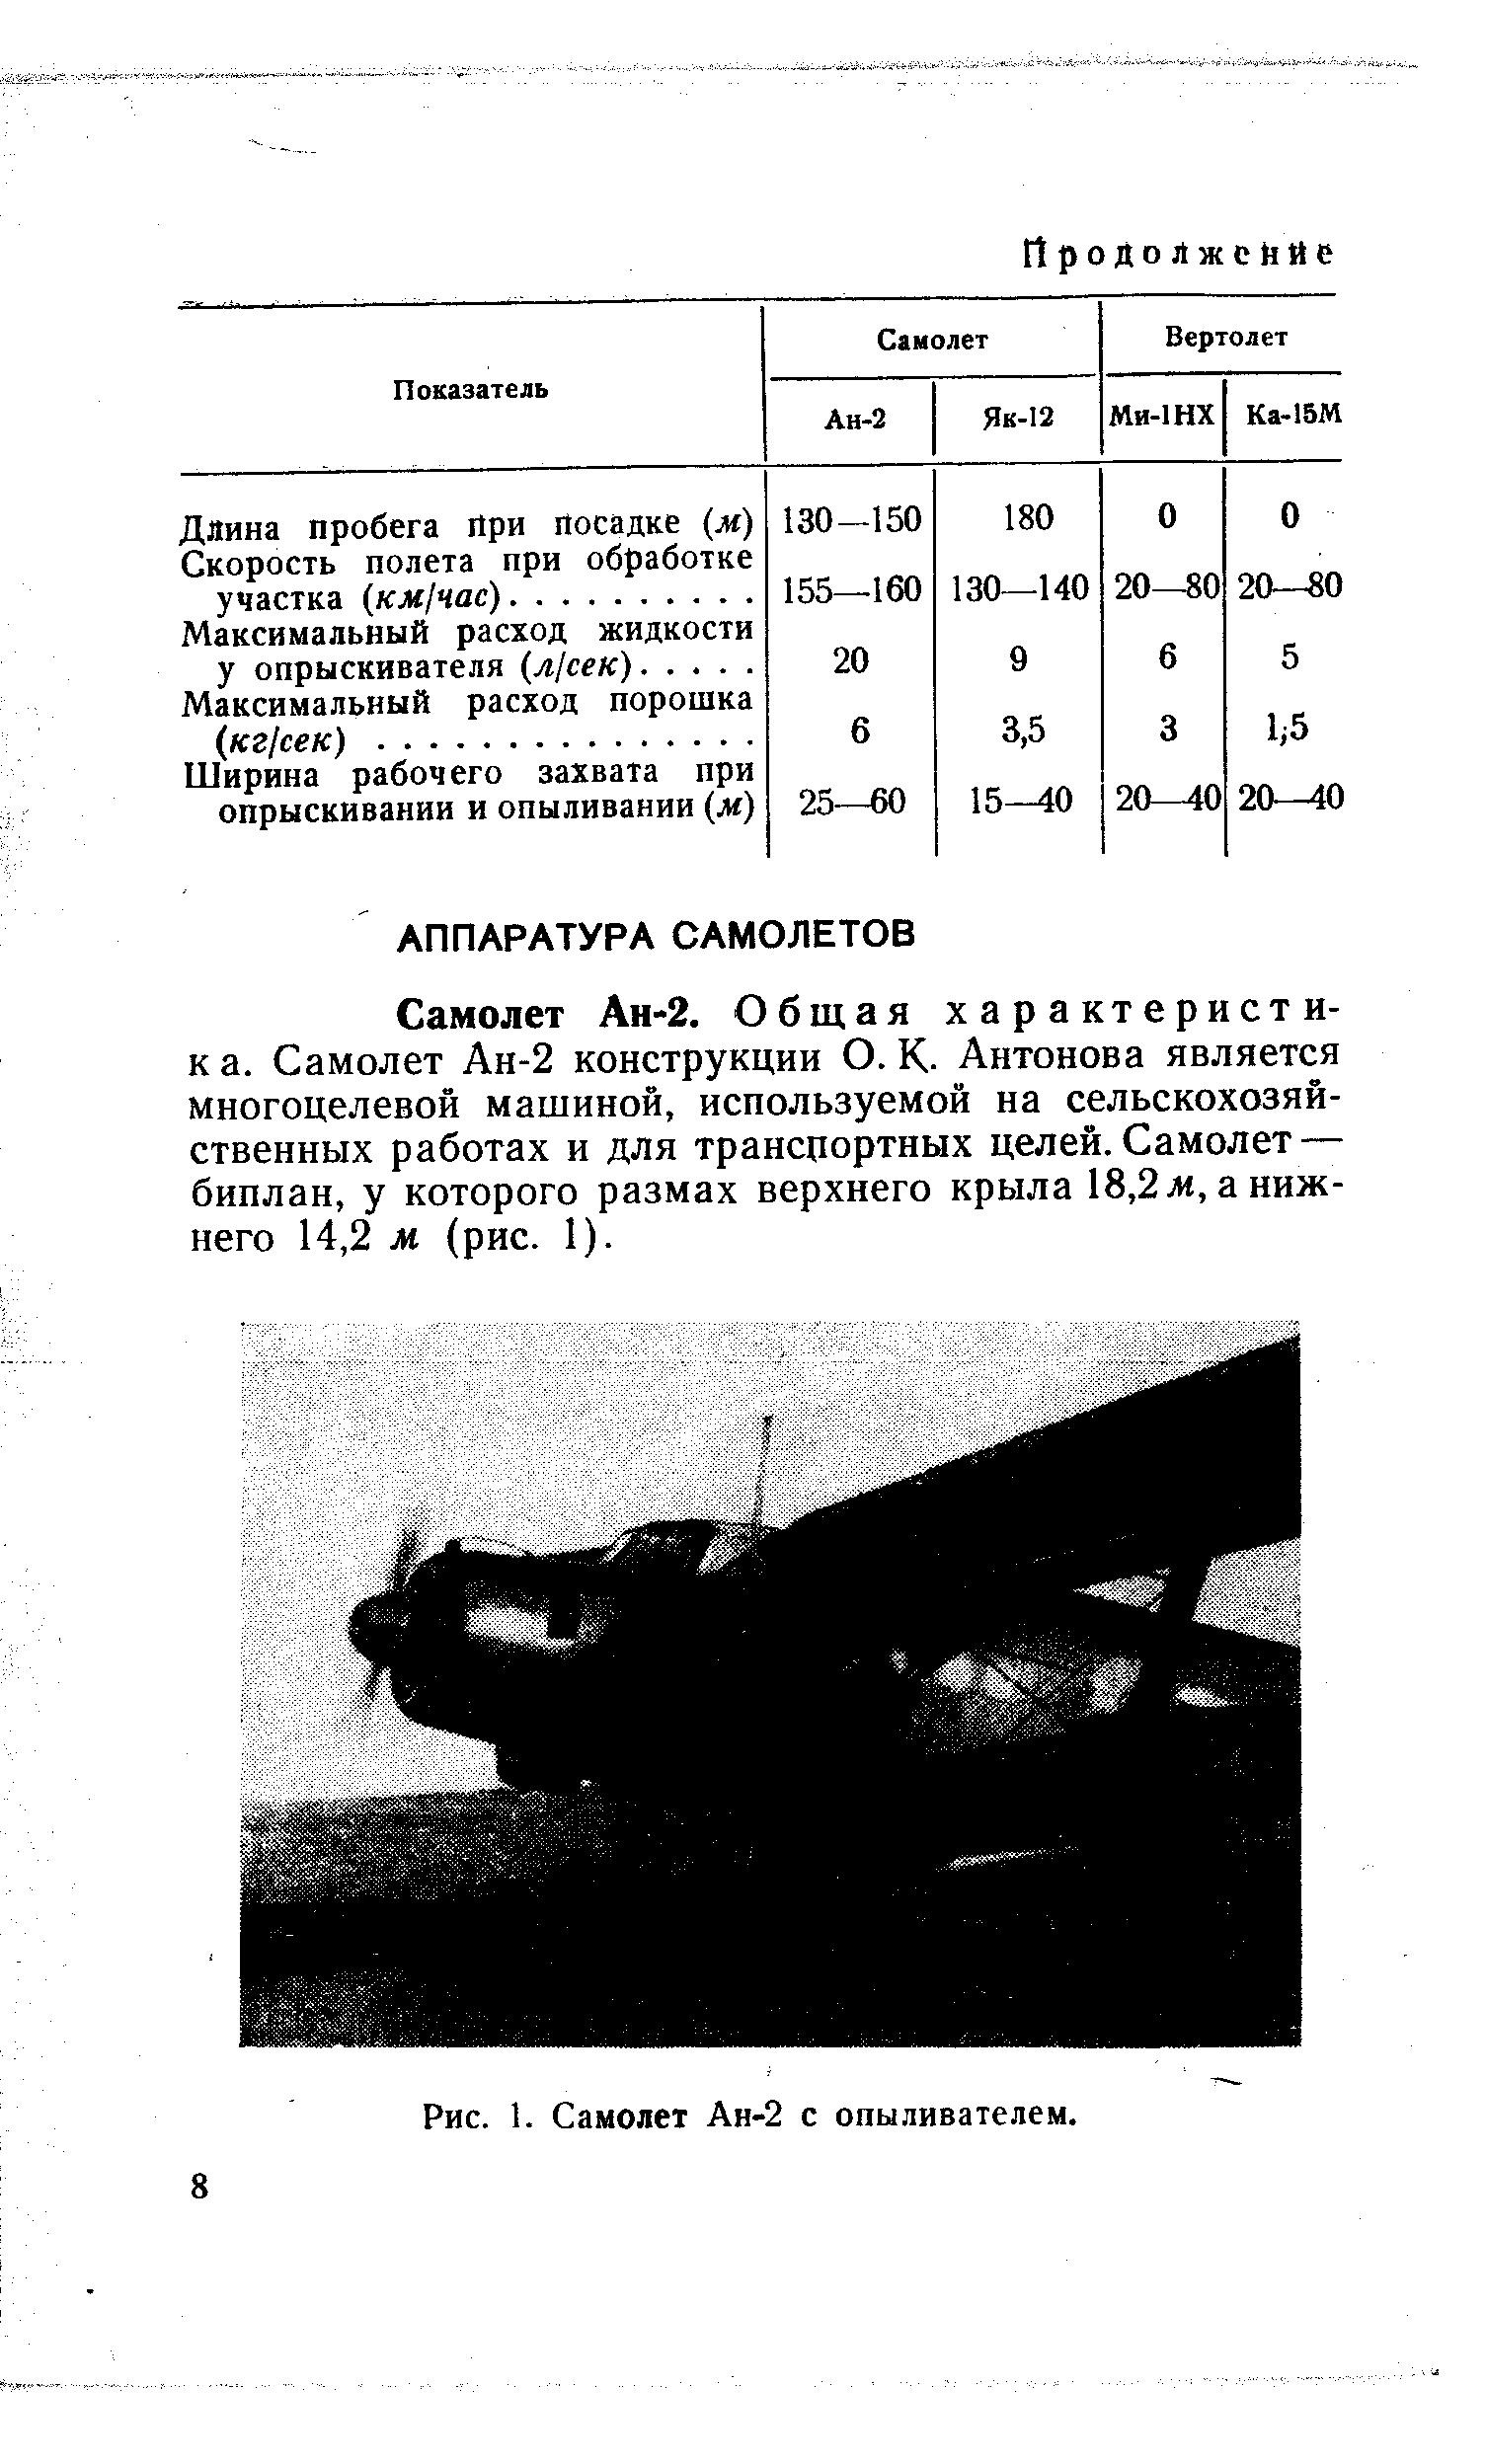 Самолет Ан-2. Общая характеристн-к а. Самолет Ан-2 конструкции О. К. Антонова является многоцелевой мащиной, используемой на сельскохозяйственных работах и для транспортных целей. Самолет — биплан, у которого размах верхнего крыла 18,2ж, а нижнего 14,2 м (рис. 1).